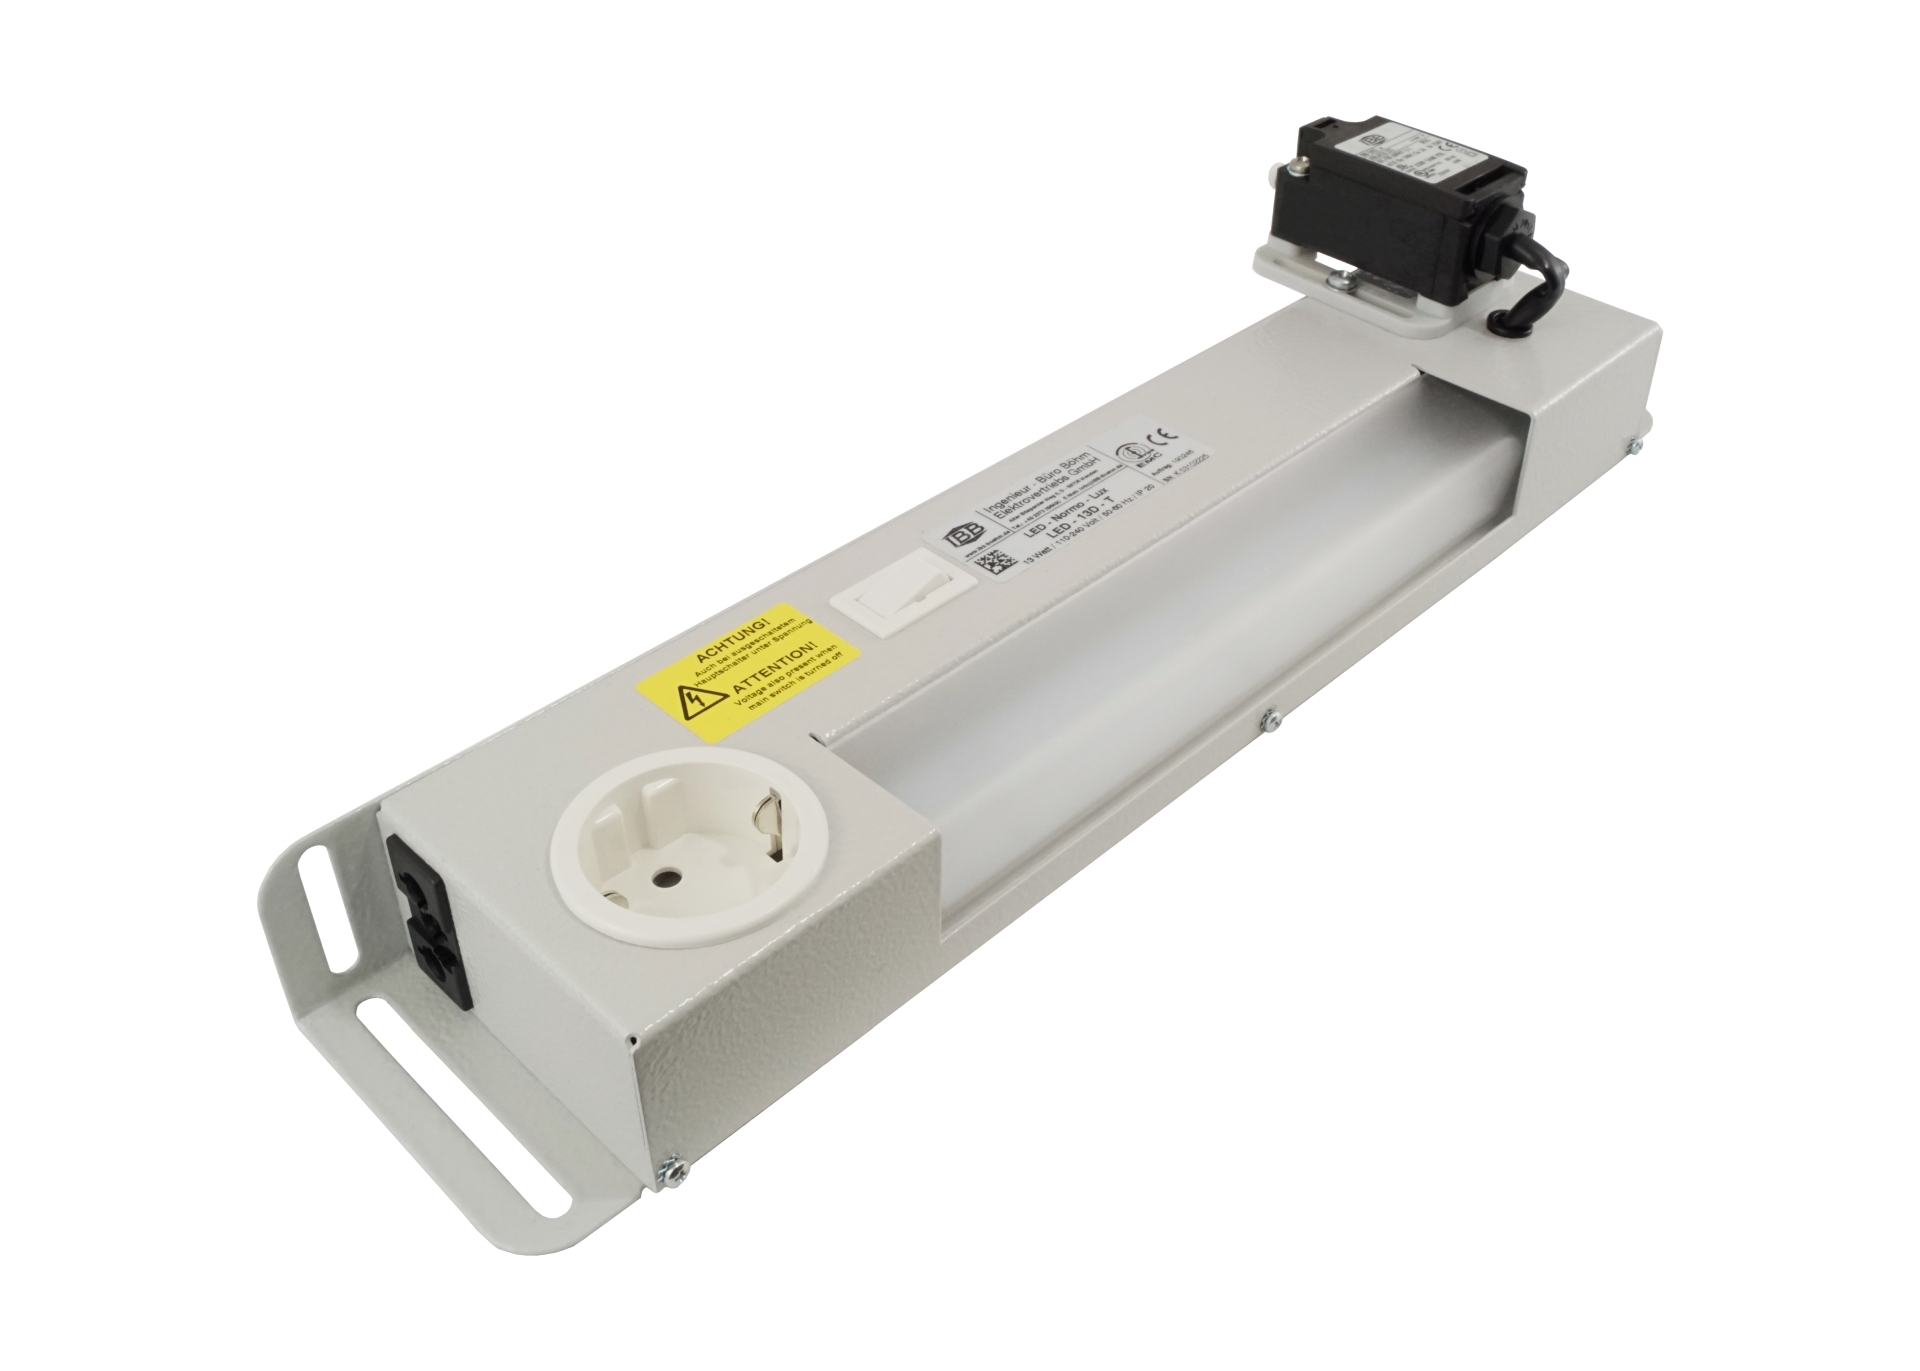 Abbildung LED Schaltschrankleuchte LED-Normo-Lux 13 Watt | Betriebsspannung: 110-240 Volt, 50-60 Hz, aufgebauter Schalter 